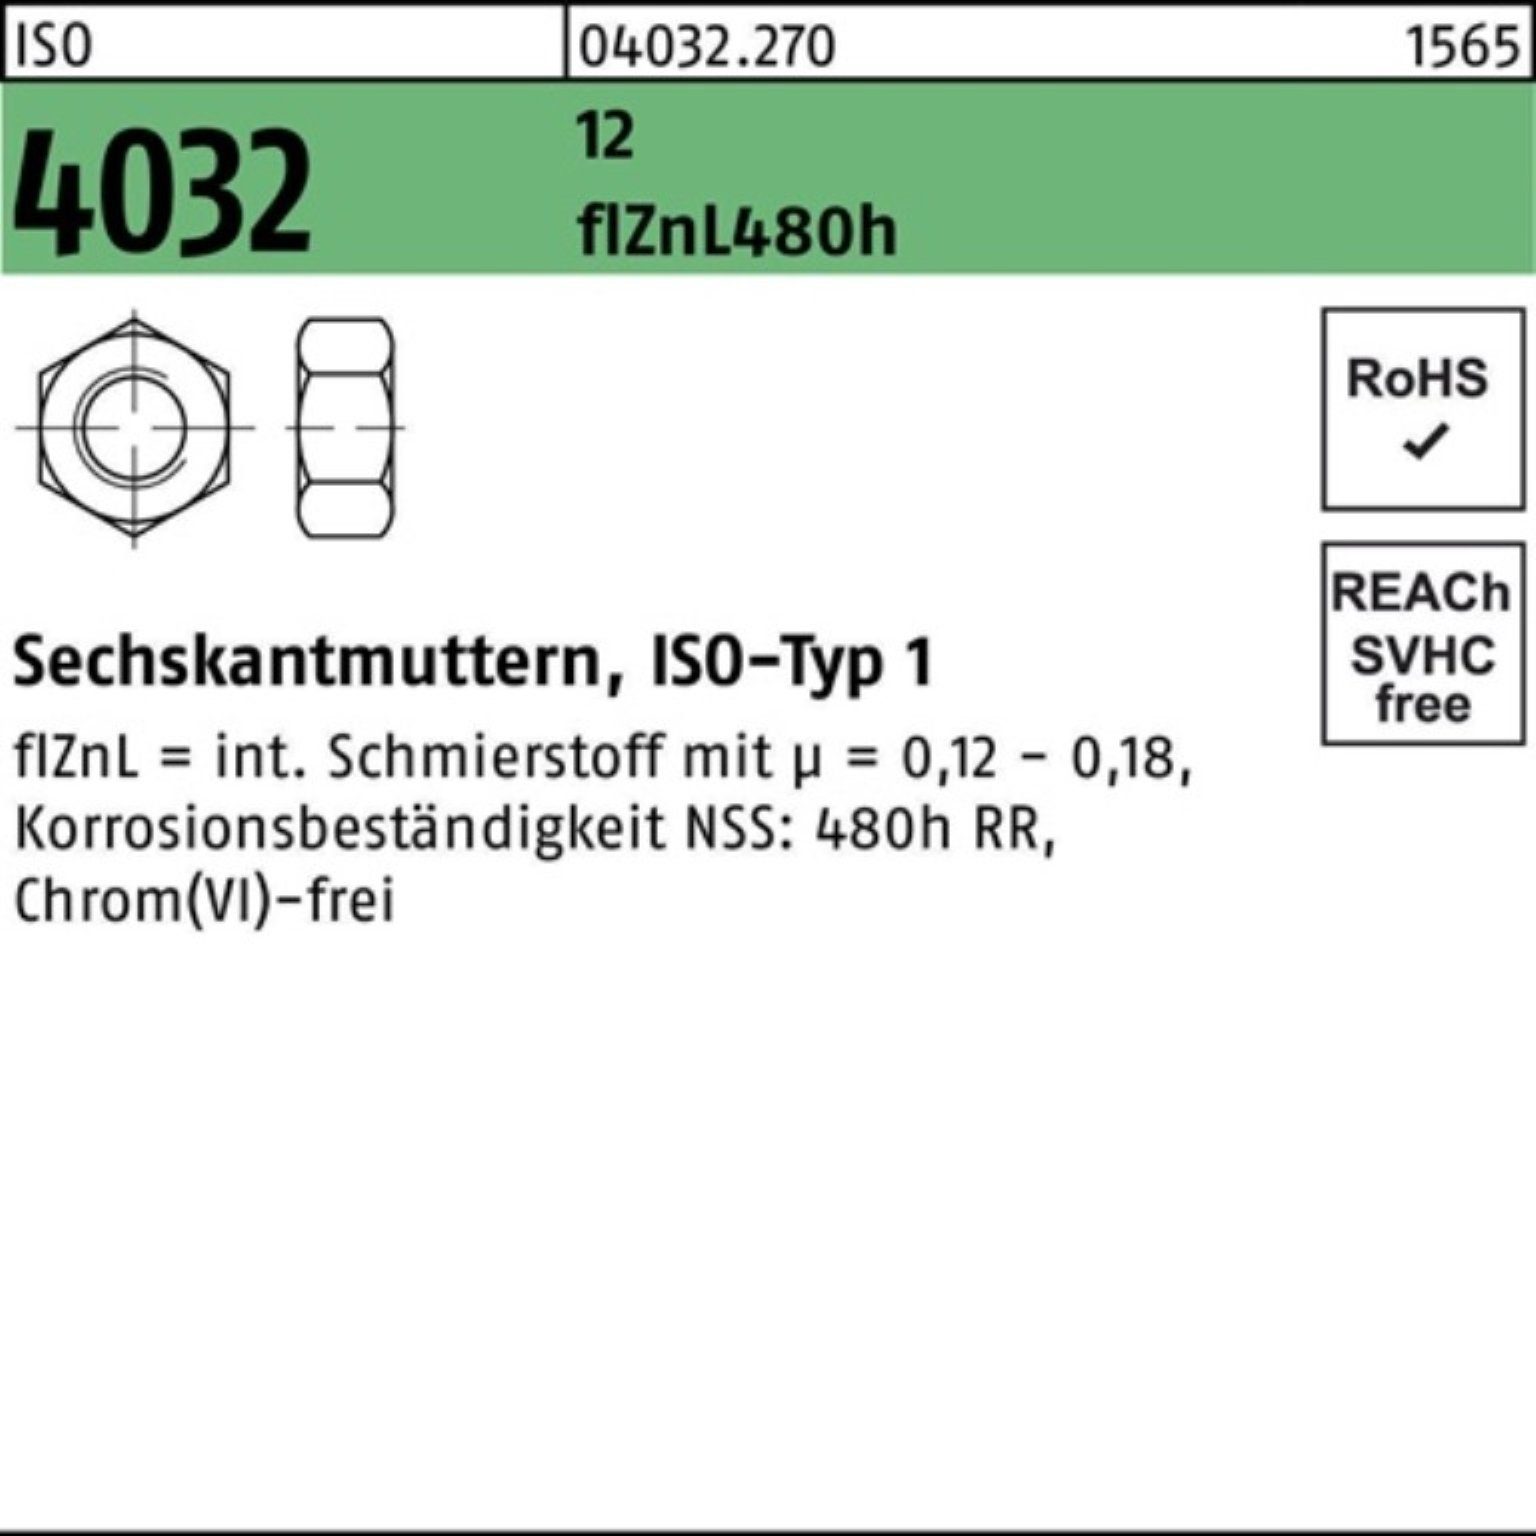 Bufab Muttern 100er Pack Sechskantmutter ISO 4032 M12 12 flZnL 480h zinklamellenb. 1